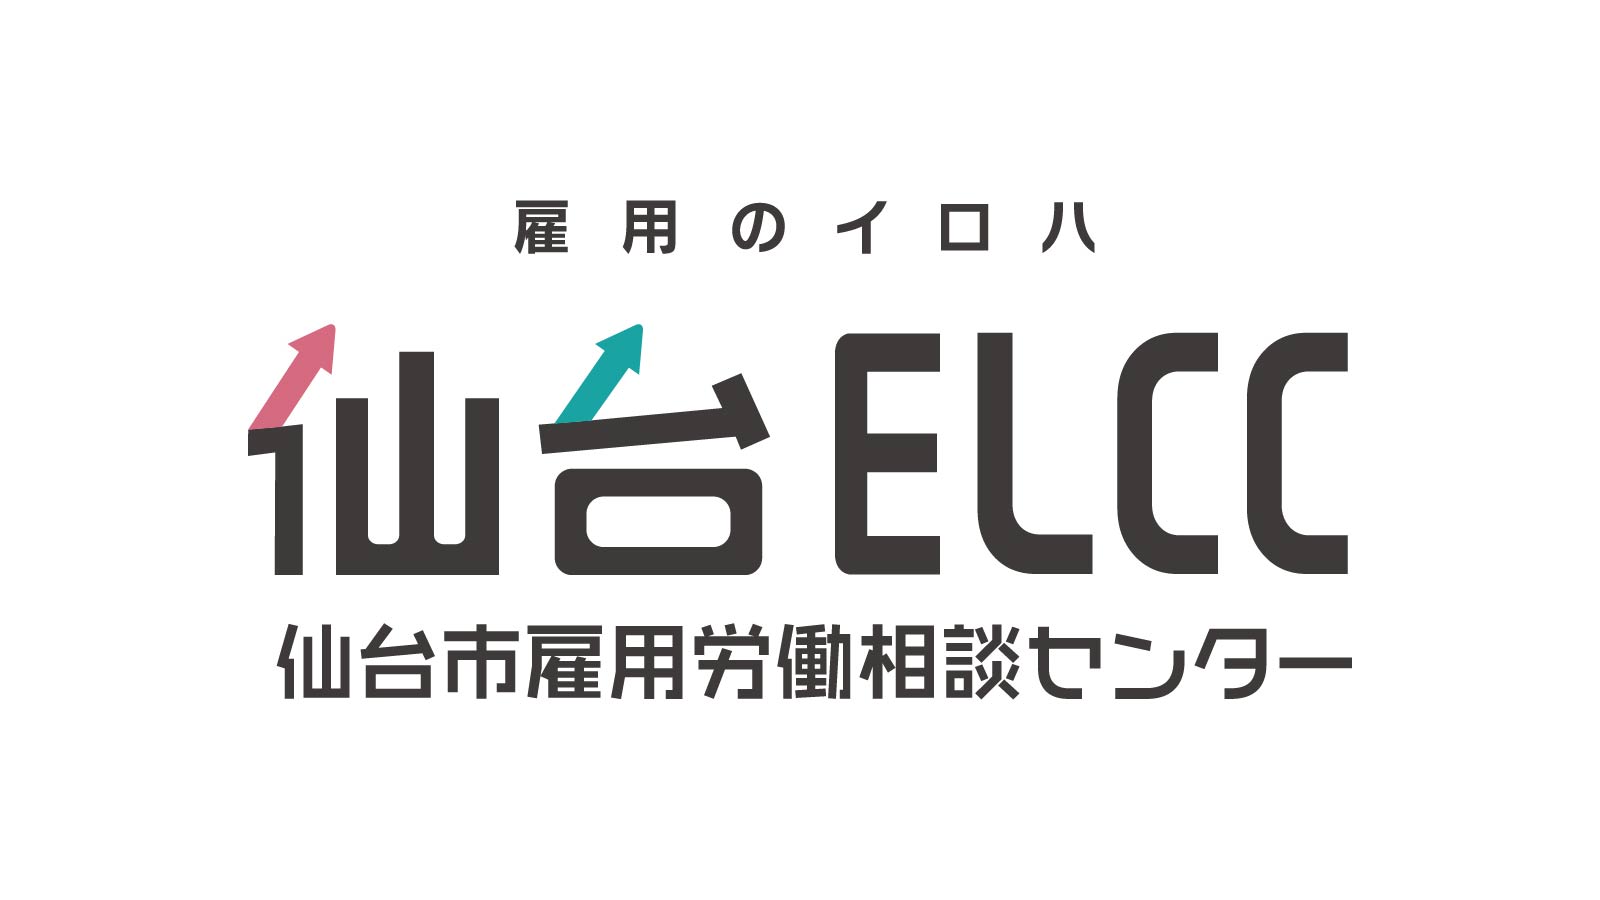 仙台ELCC 定例セミナー vol.14 「企業の成長と労務管理」